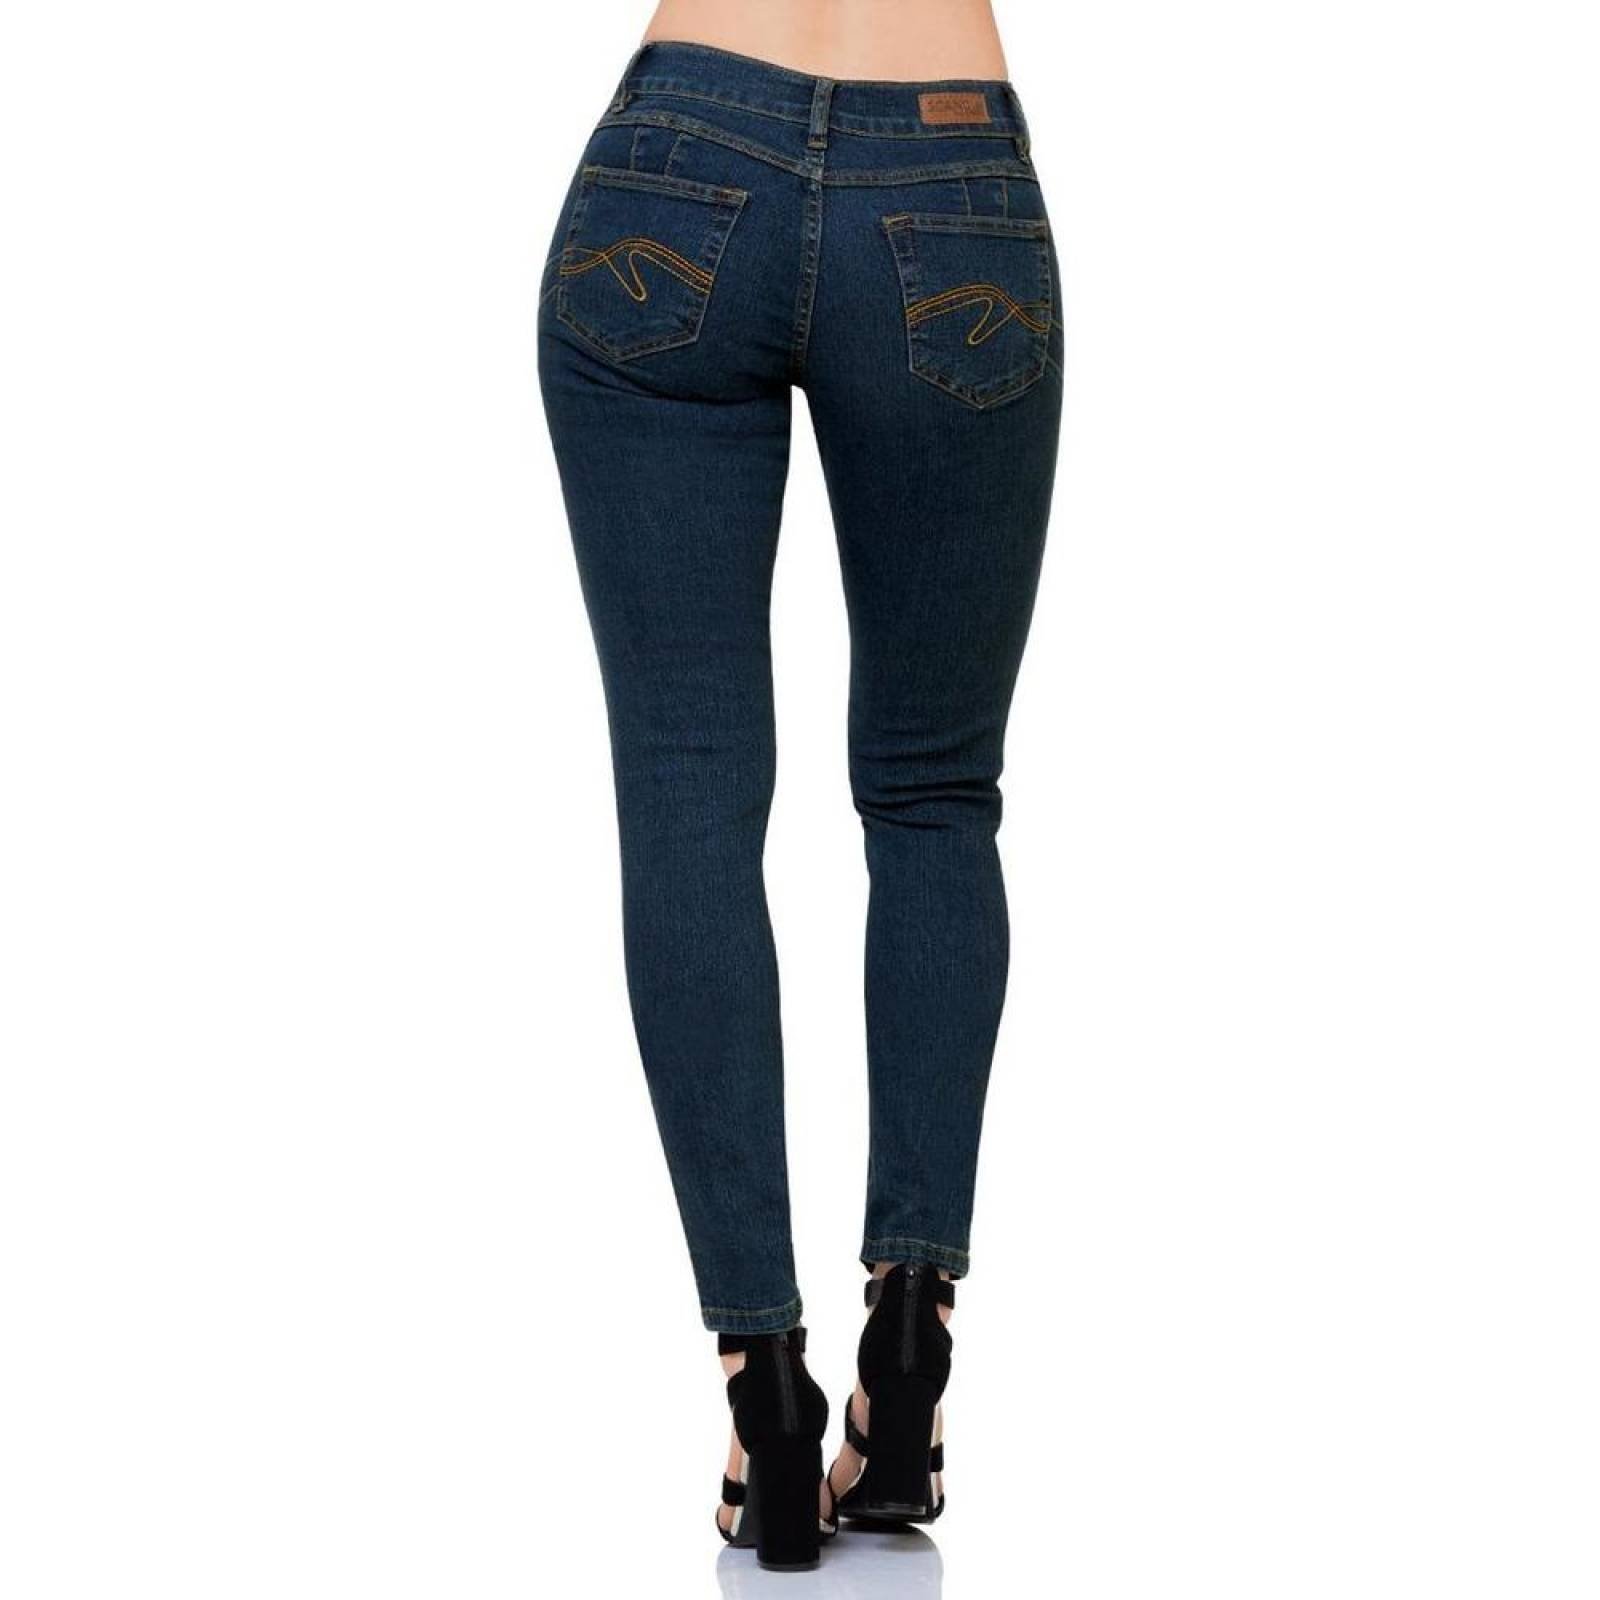 Jeans Básico Mujer SCandia Dirty 65000789 Mezclilla Stretch 